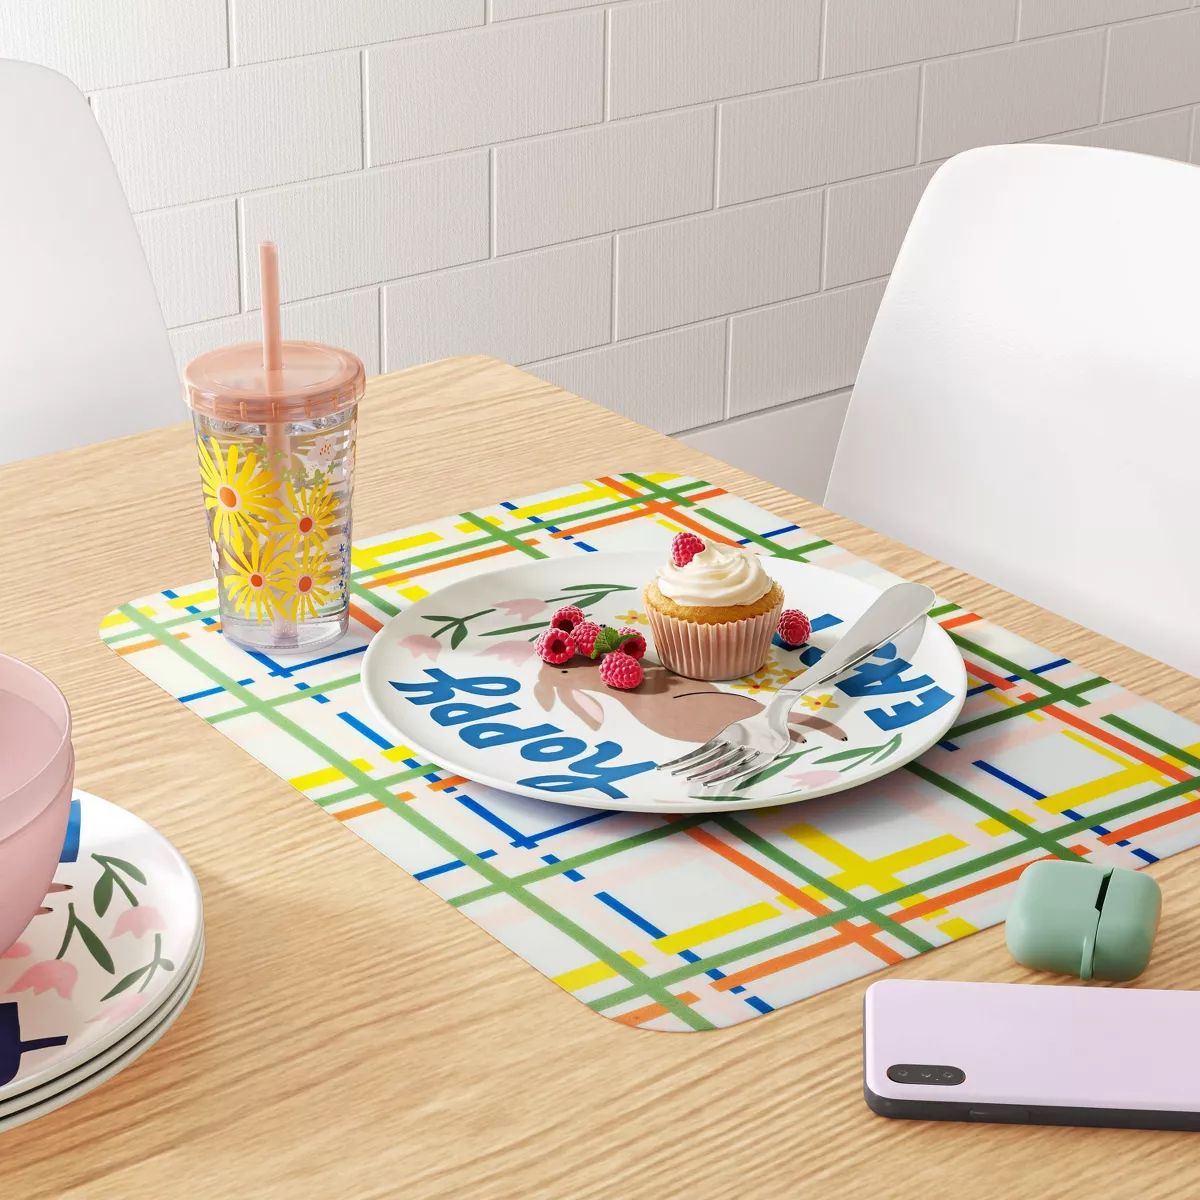 10" Hoppy Easter Dinner Plate White - Room Essentials™ | Target